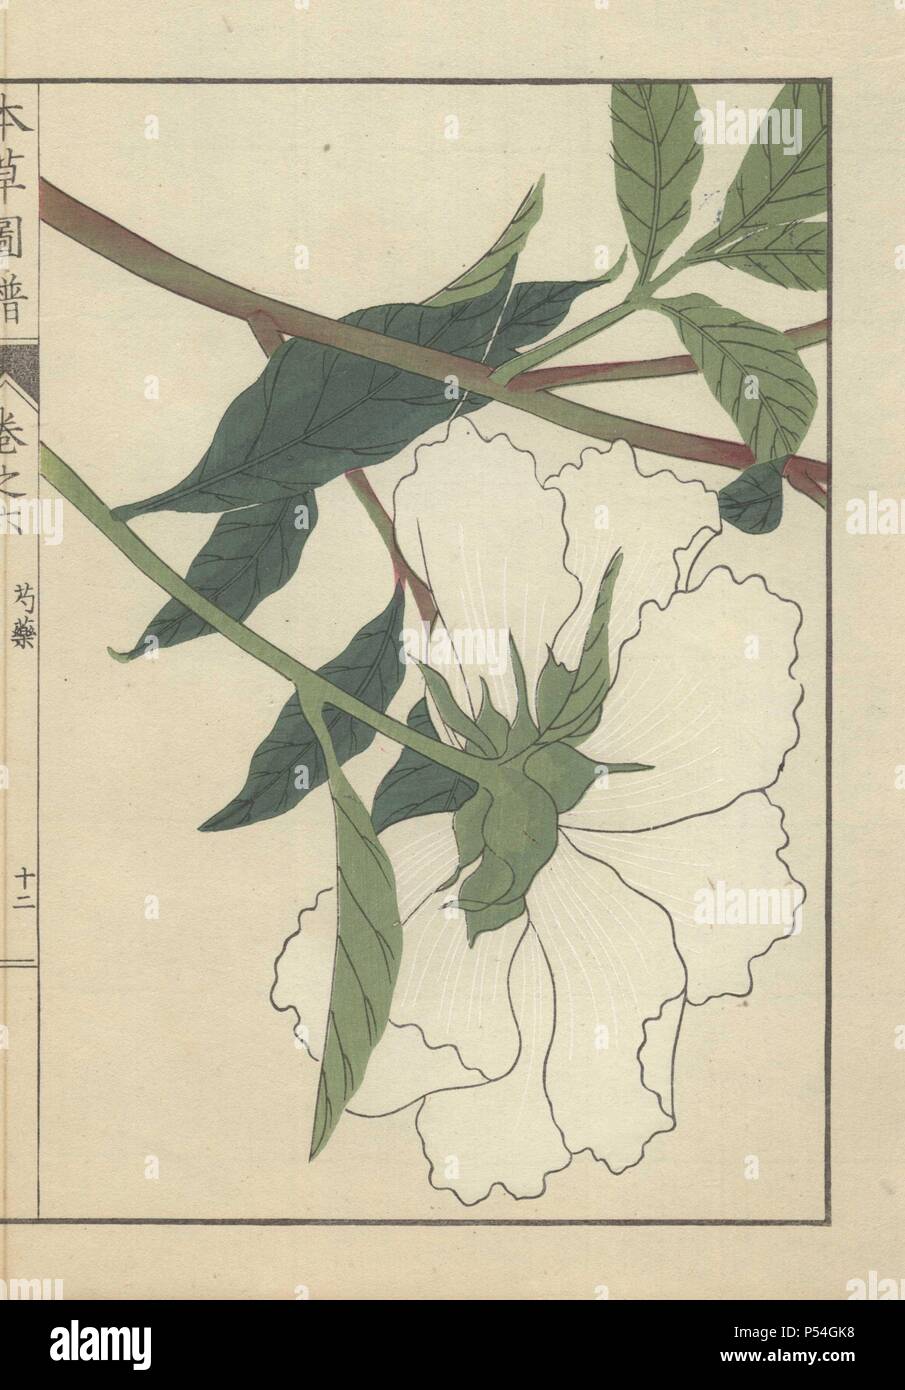 Large White peonia fiore (lato inferiore) con stelo verde e foglie di colore verde scuro. Paeonia albiflora. Shakuyaku. . Stampato a colori woodblock incisione di Kan'en Iwasaki da 'Honzo Zufu", una guida illustrata per piante medicinali, 1884. La Iwasaki (1786-1842) era un giapponese botanico, entomologo e zoologo. Egli è stato uno dei primi botanici giapponesi per incorporare la conoscenza occidentale nei suoi studi. Foto Stock